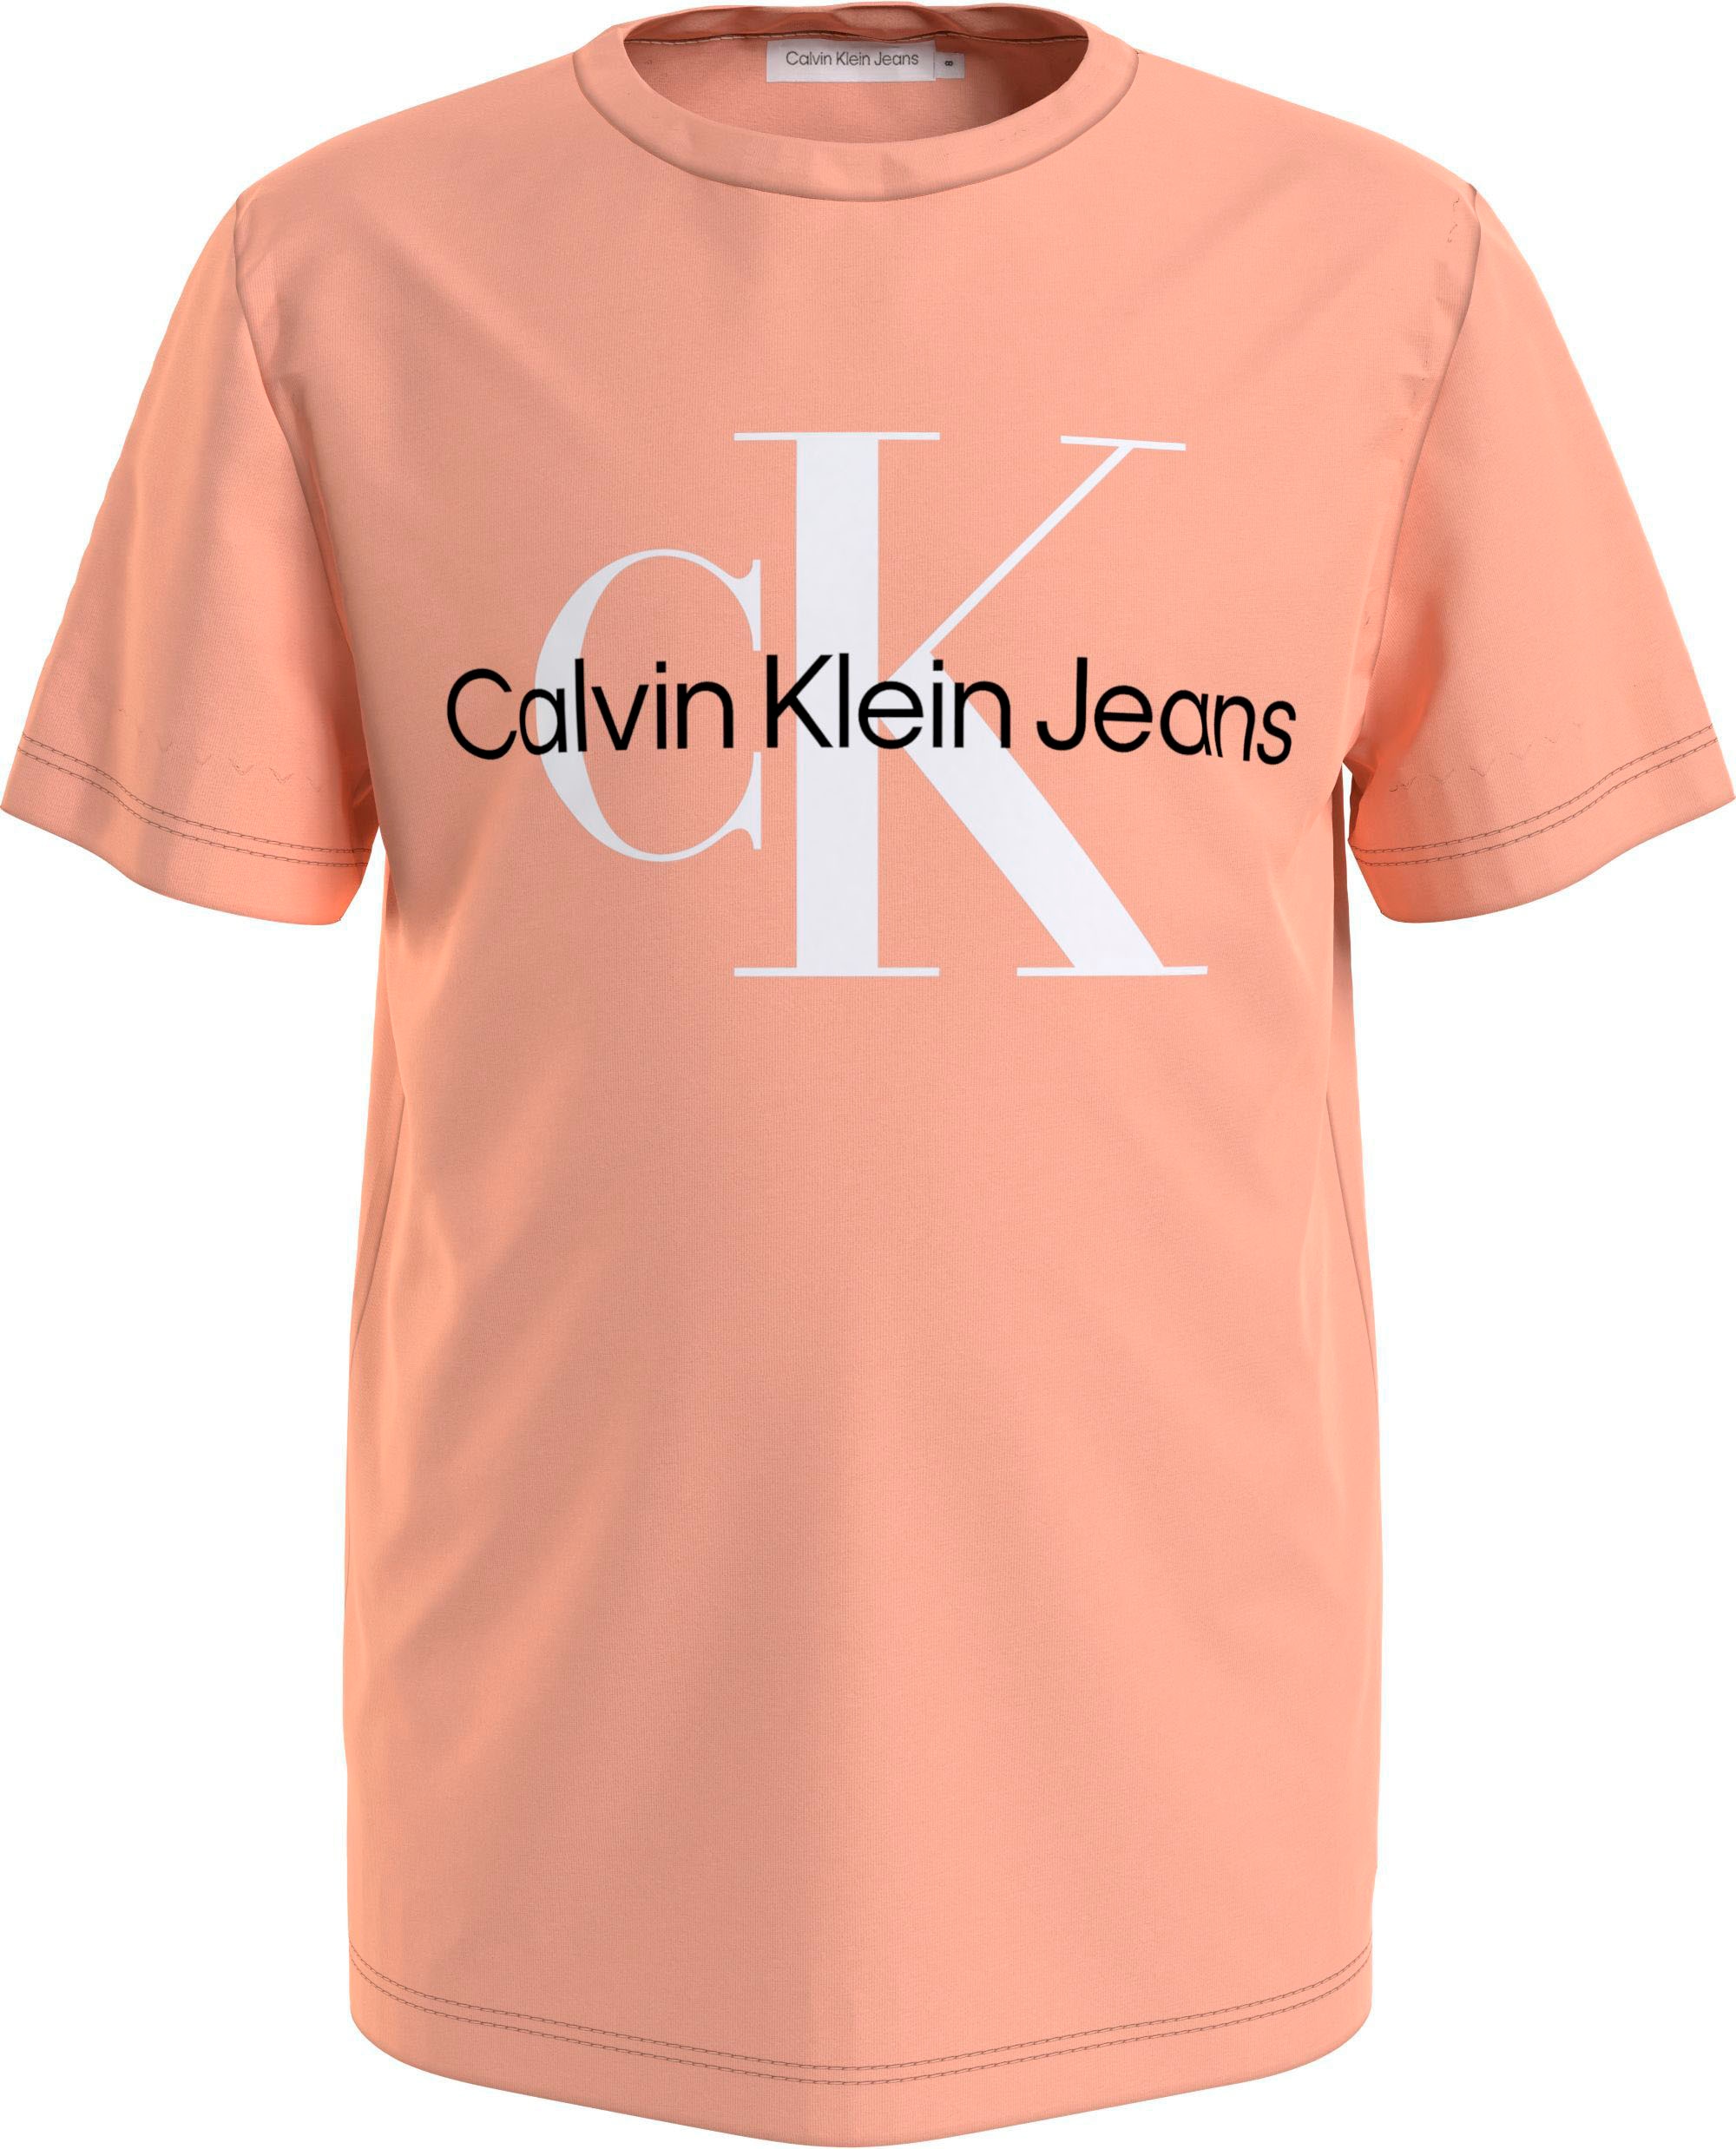 Calvin Klein Jeans T-Shirt »MONOGRAM LOGO T-SHIRT«, Kinder Kids Junior  MiniMe,für Mädchen und Jungen bei ♕